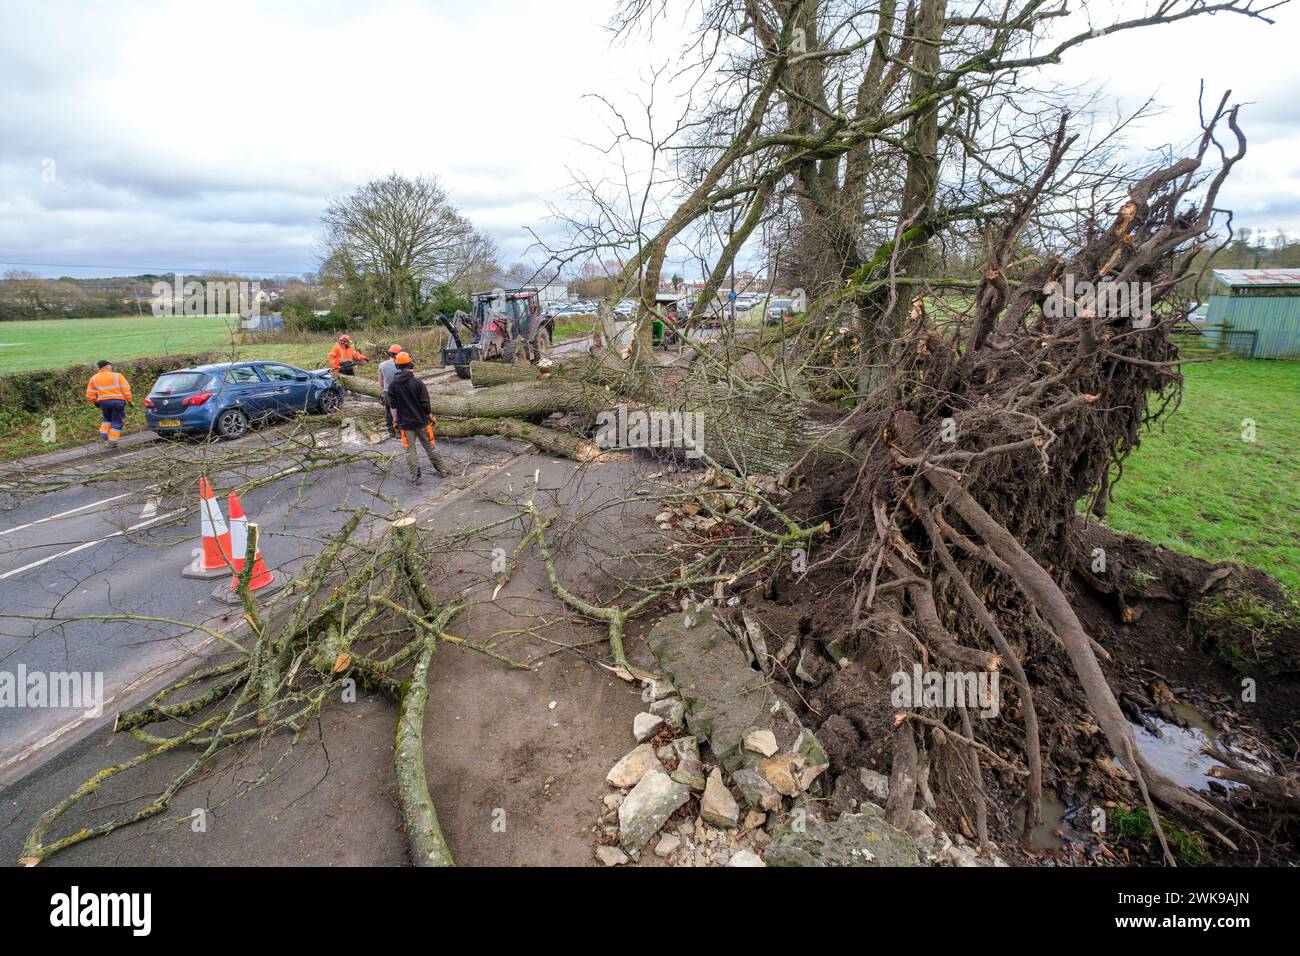 Die Arbeiter räumen einen Baum, der fiel und die A417 an der A435-Kreuzung in Cirencester blockierte, während der Sturm Pia starke Winde auslöste. Ein kleiner Vauxhall-Wagen wurde unter den äußeren Ästen des Baumes gefangen und zerquetscht, die Insassen waren in Ordnung. Stockfoto